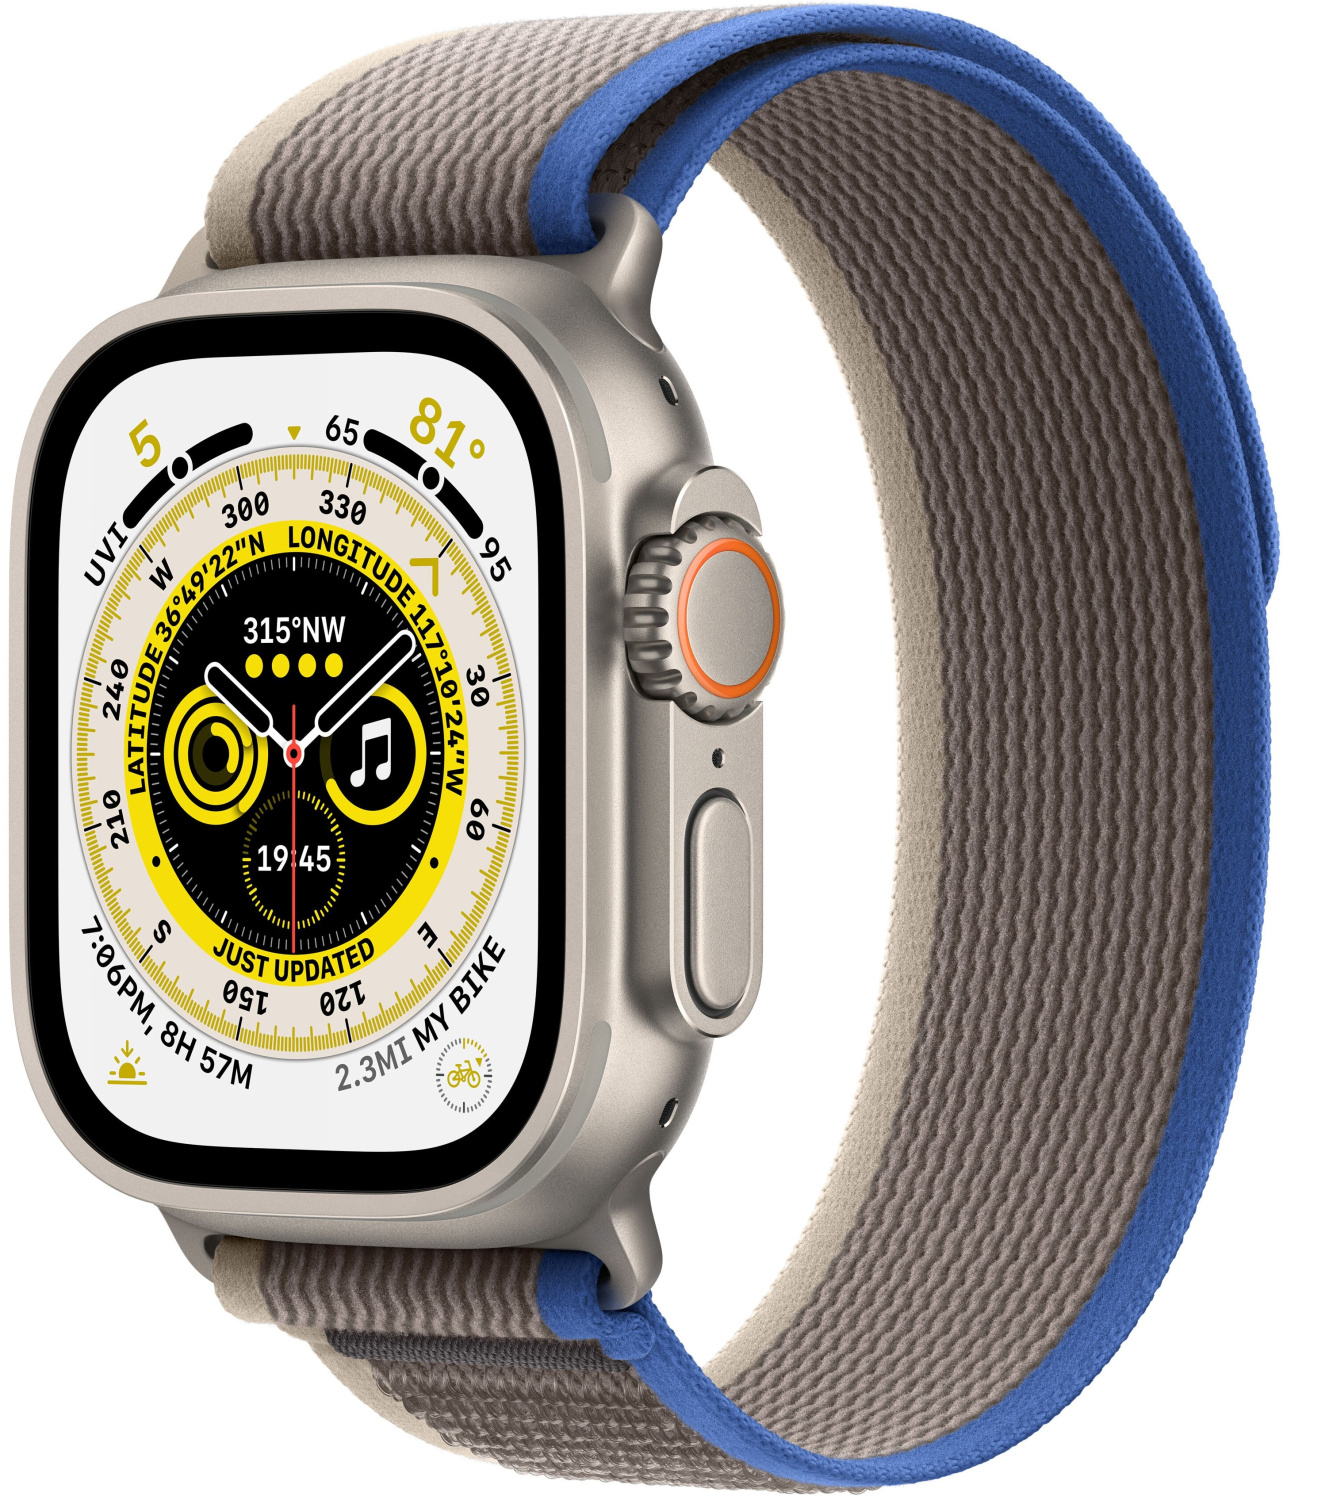 Купить apple watch ultra gps + cellular, 49 мм, корпус из титана, ремешок trail синего/серого цвета Apple Watch Ultra в официальном магазине Apple, Samsung, Xiaomi. iPixel.ru Купить, заказ, кредит, рассрочка, отзывы,  характеристики, цена,  фотографии, в подарок.